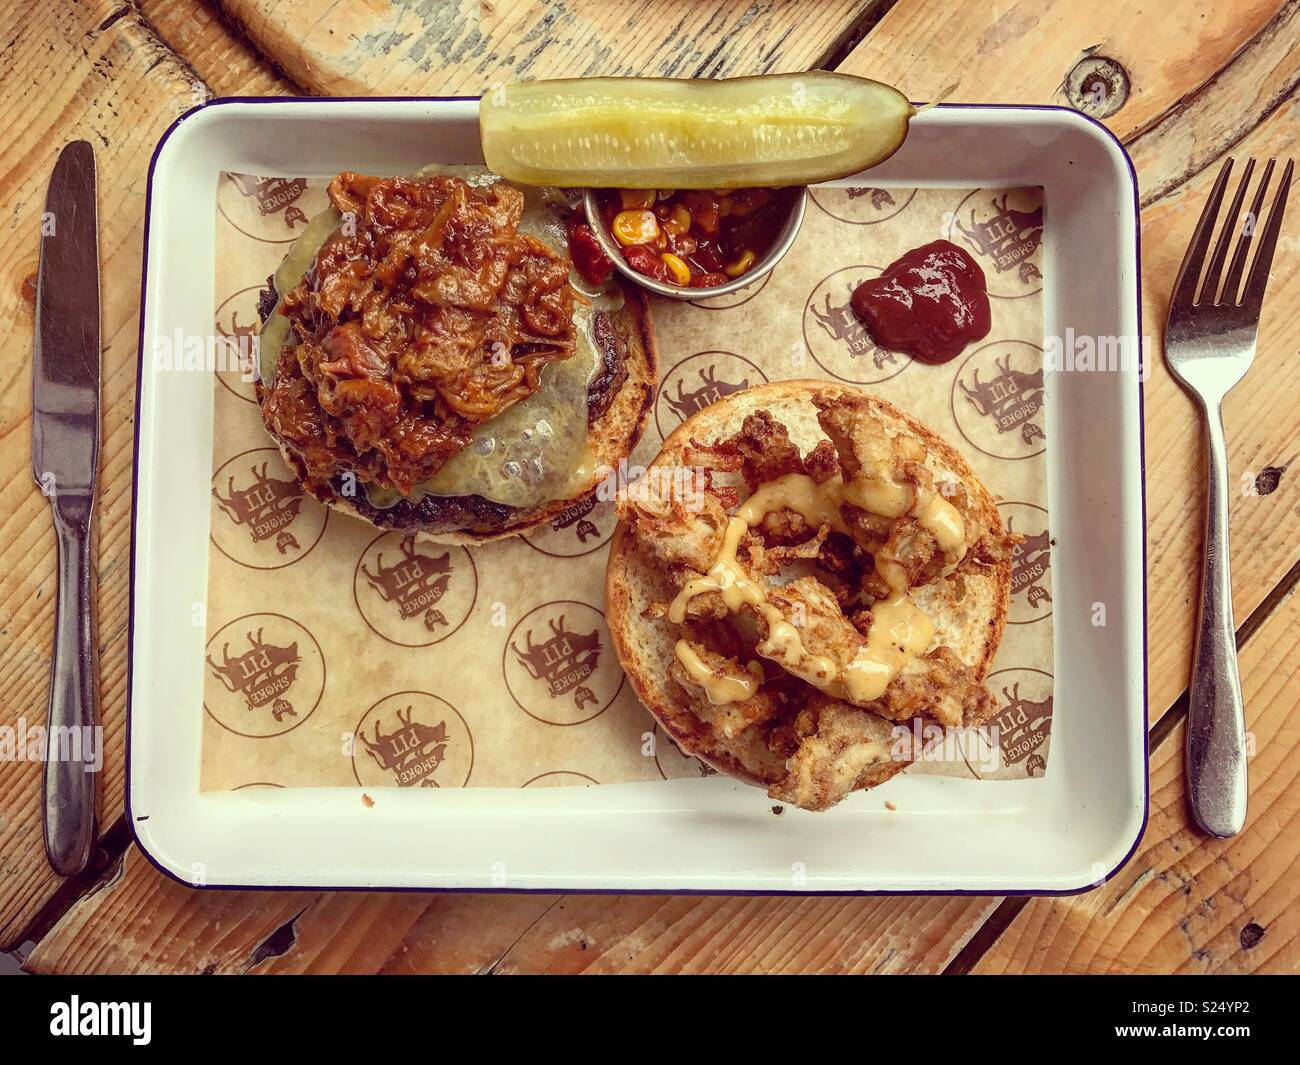 Burger meal Stock Photo